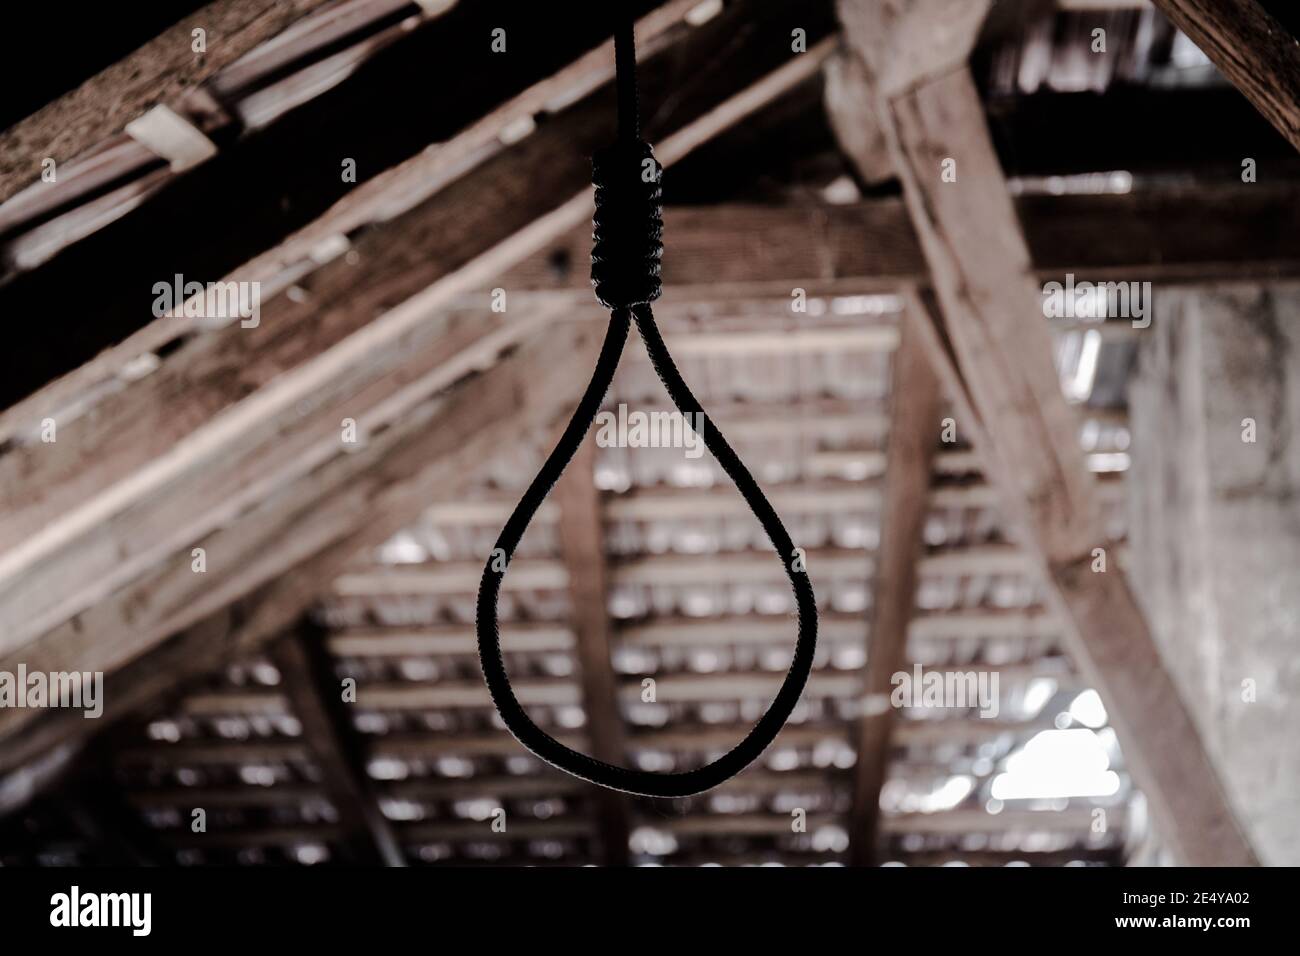 Un cappio appeso intorno al collo, un suicidio commesso, scene orribili in un soffitta oscura Foto Stock